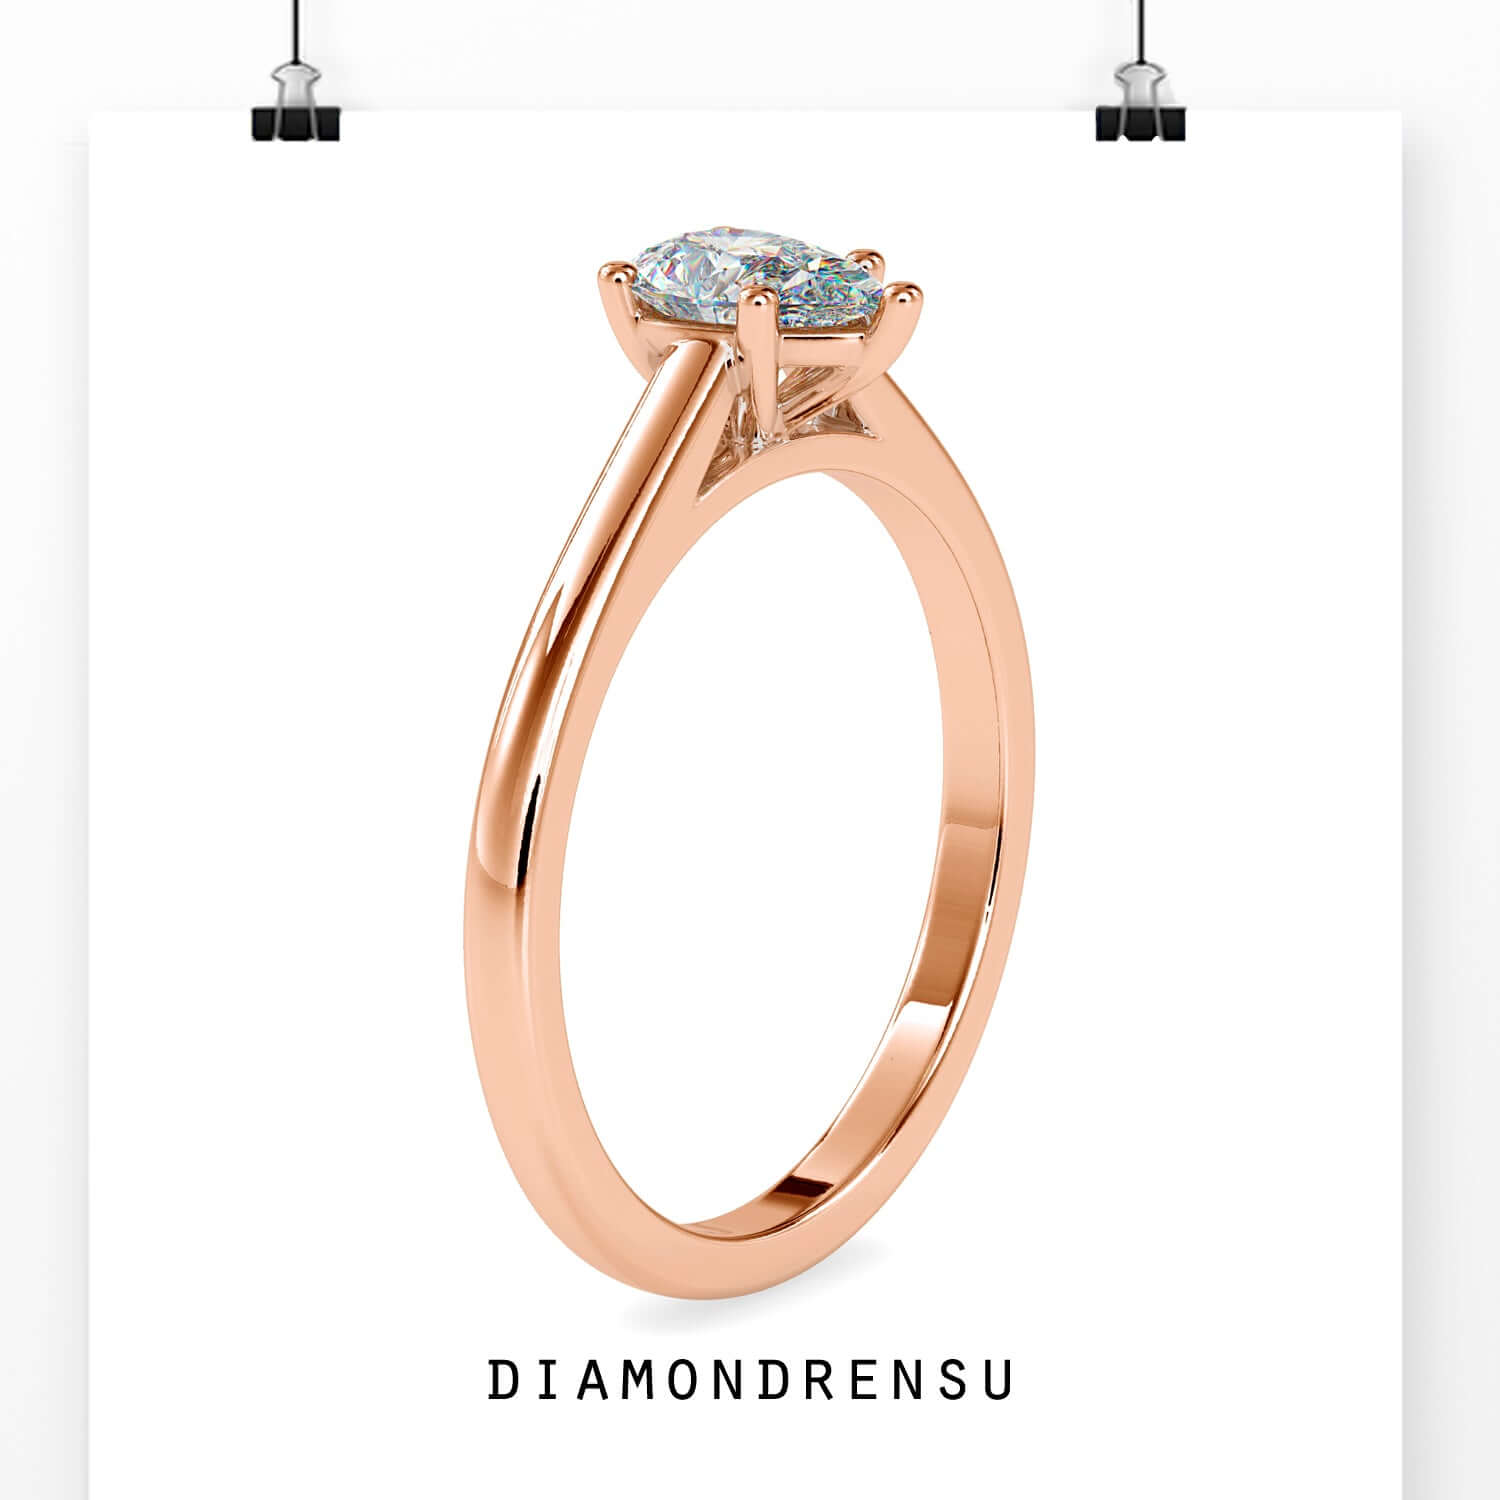 rose cut engagement rings - diamondrensu